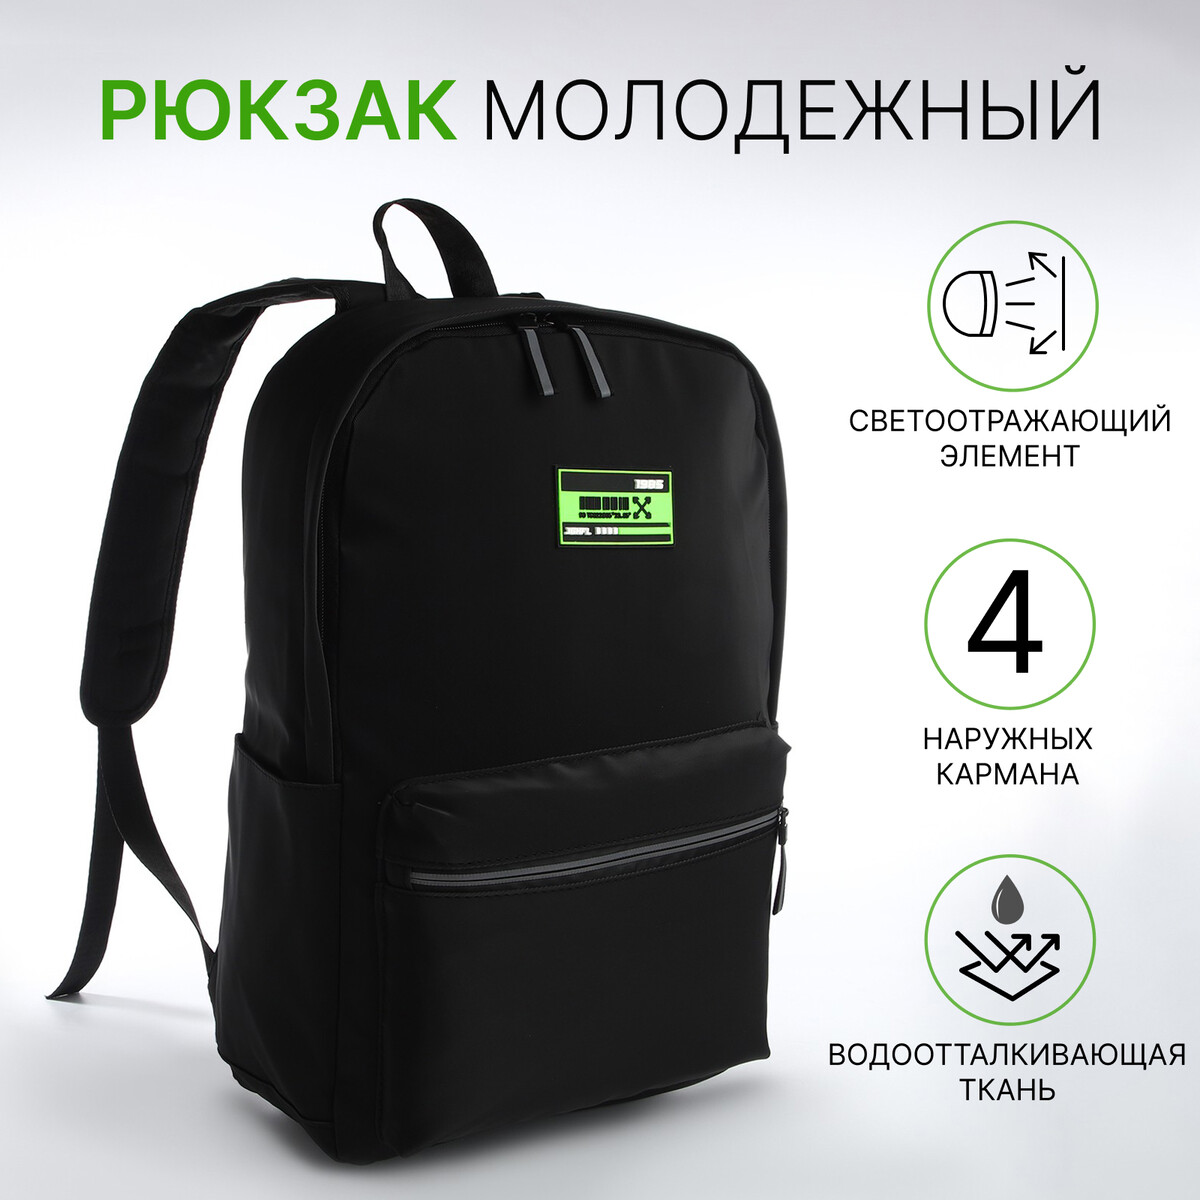 Рюкзак молодежный из текстиля на молнии, 2 кармана, цвет черный/зеленый рюкзак молодежный из текстиля 2 отдела на молнии 4 кармана зеленый